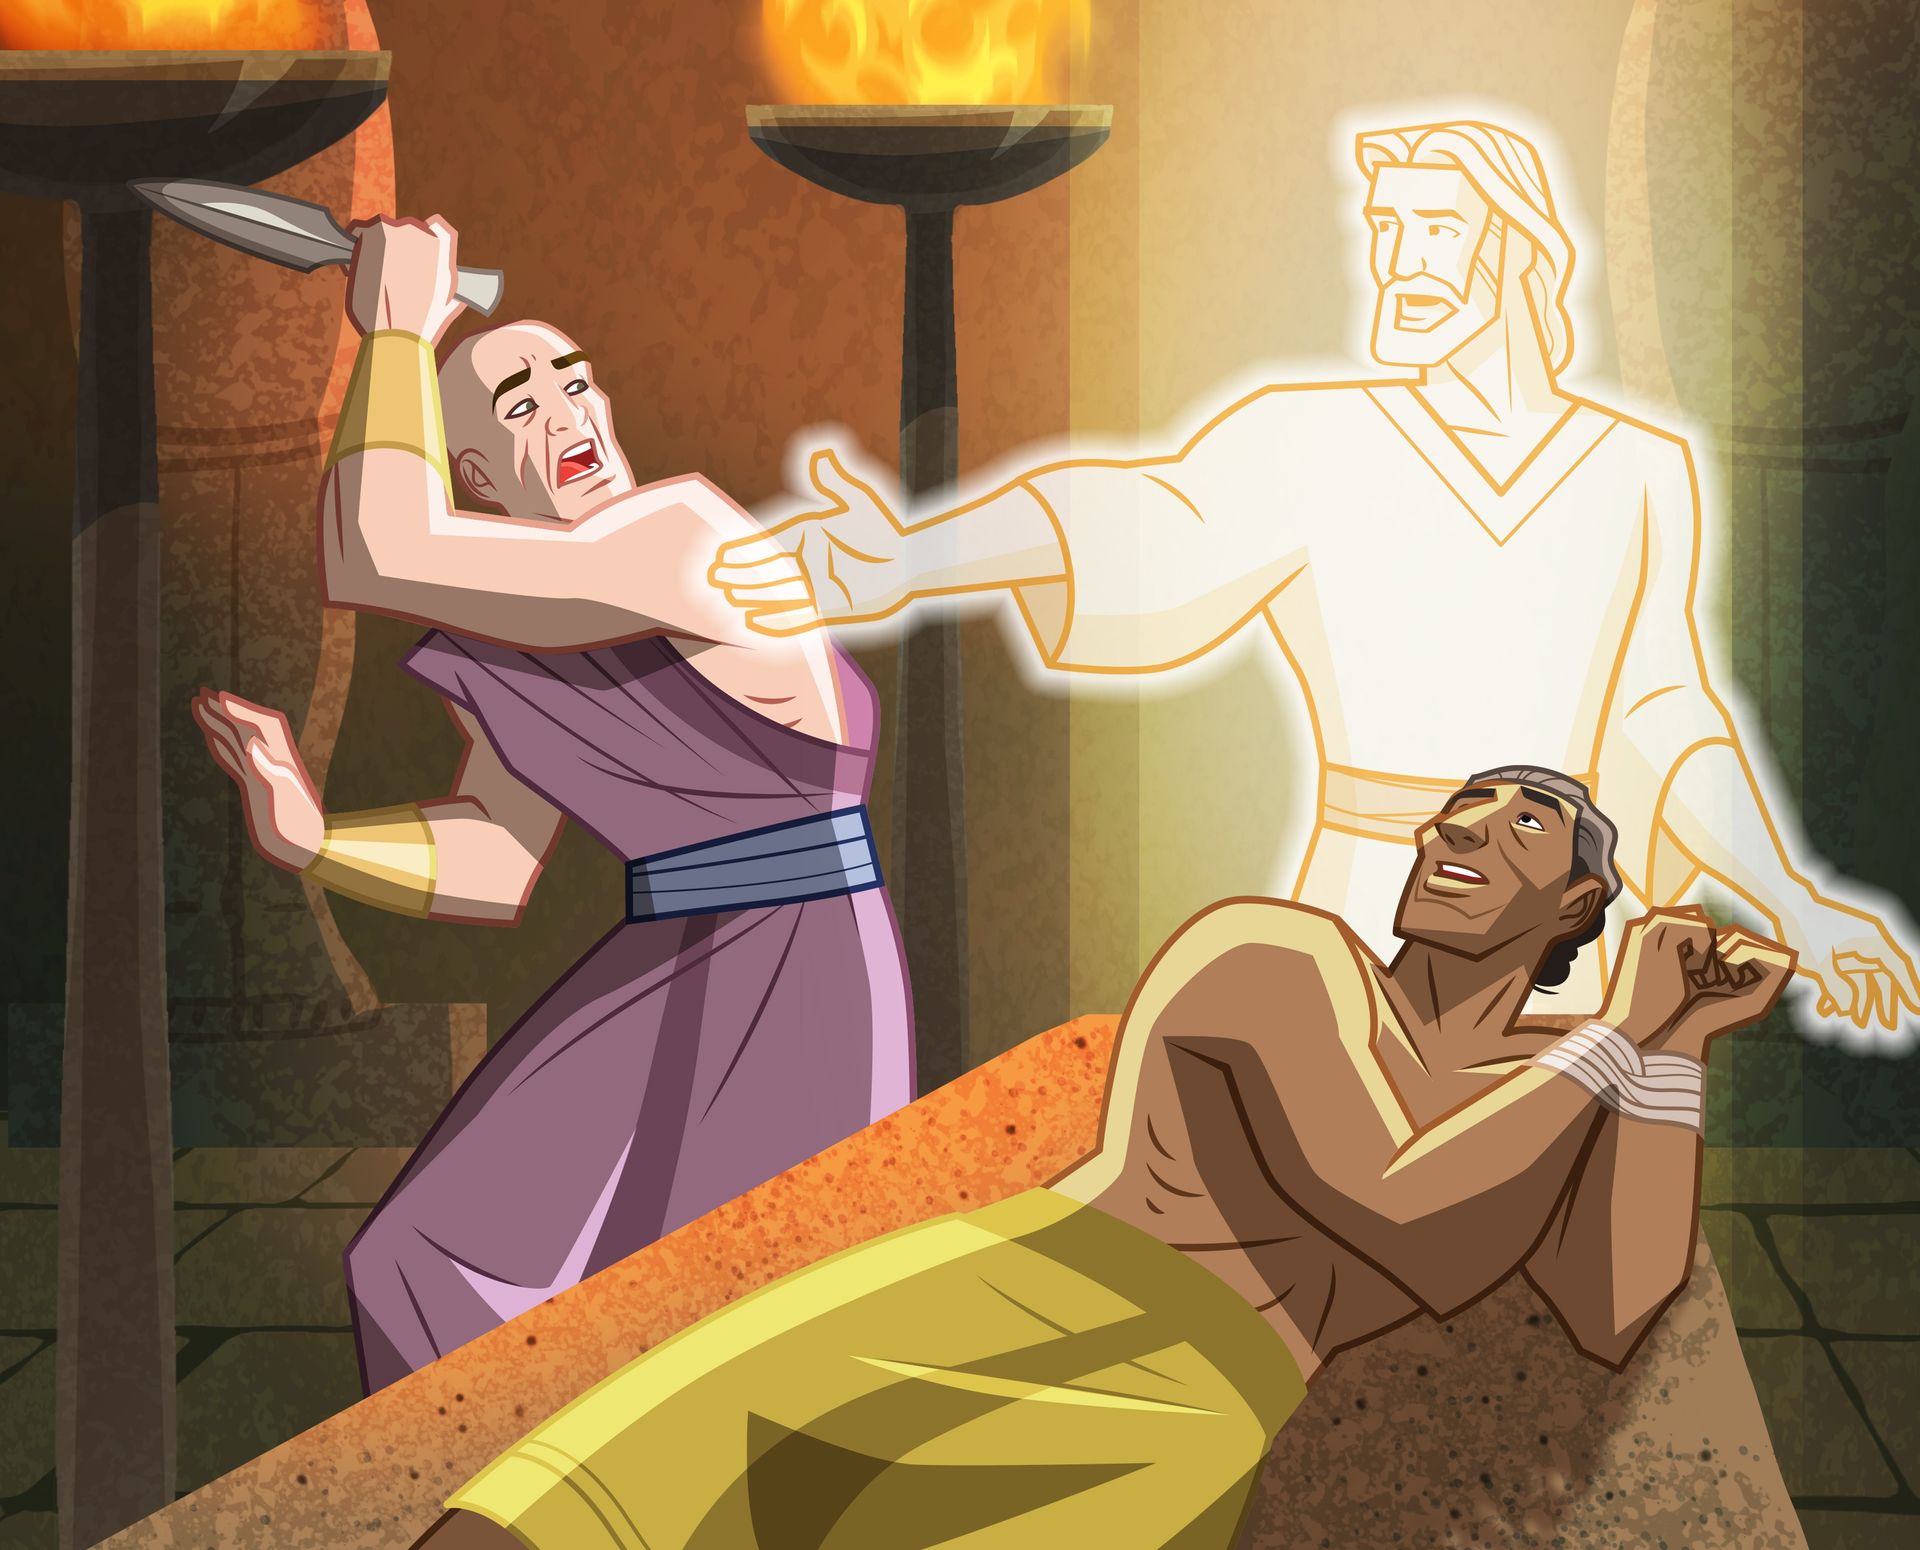 Иллюстрация: Ангел спасает Авраама от священника, который собирается принести его в жертву. 
Авраам 1:1-20